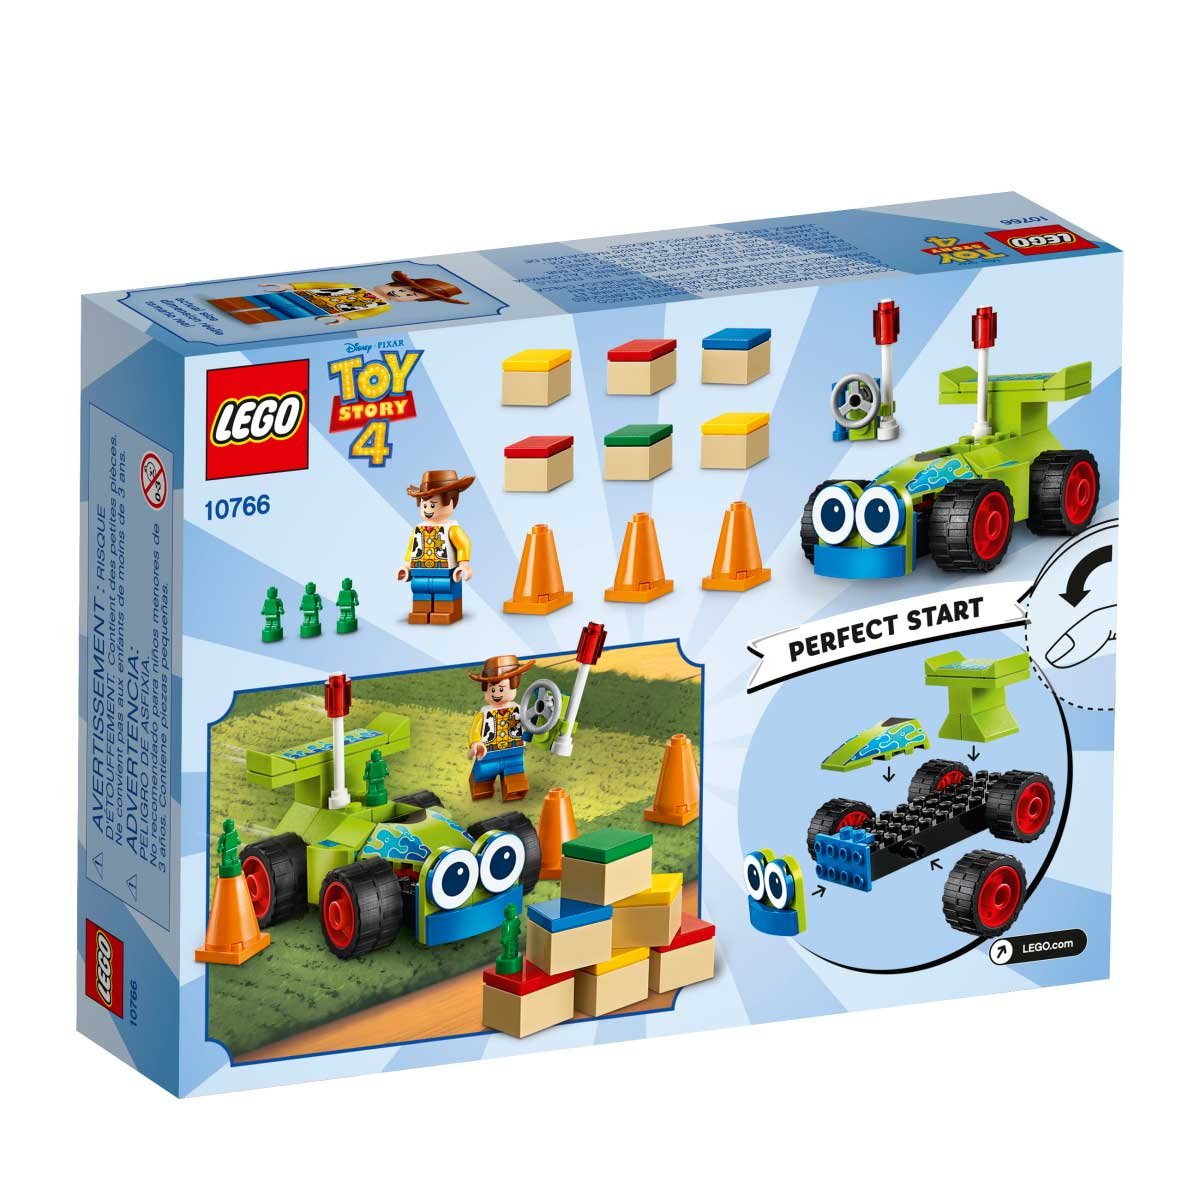 Woody Y Rc Lego